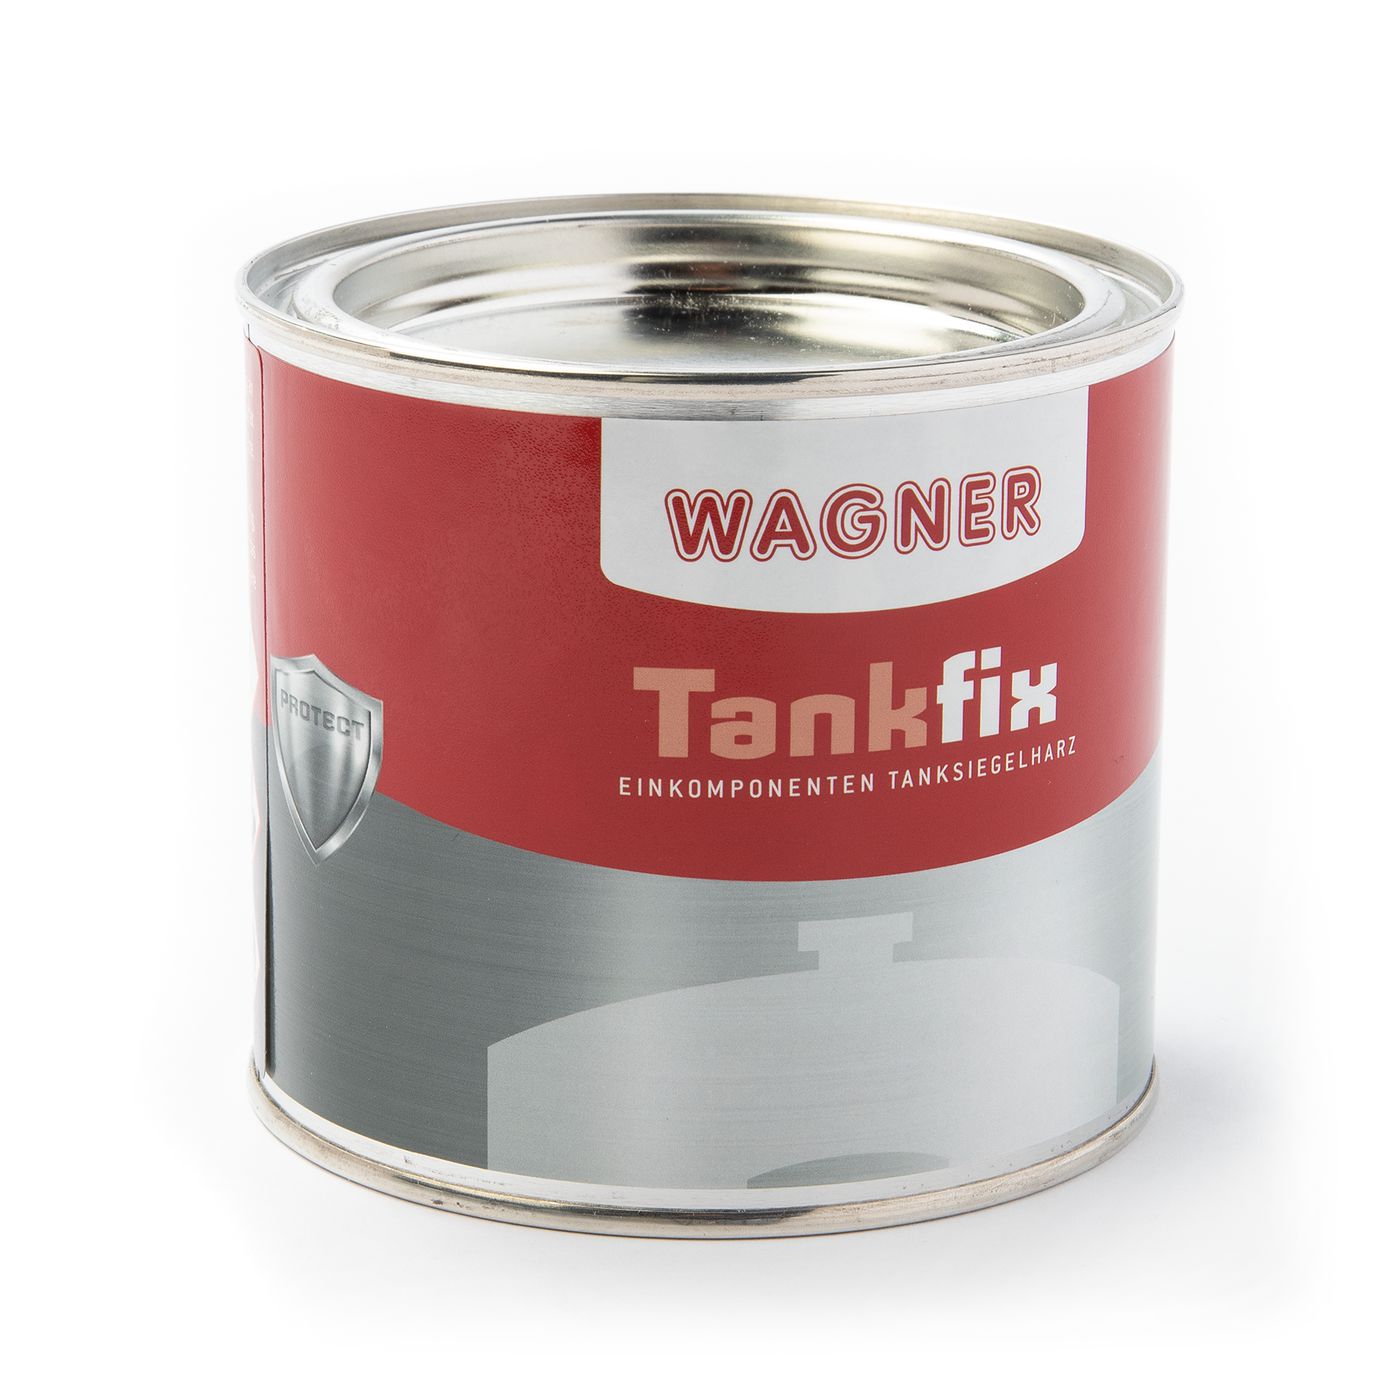 Tankversiegelung
Fuel tank sealant
Protection de réservoir
Tanq